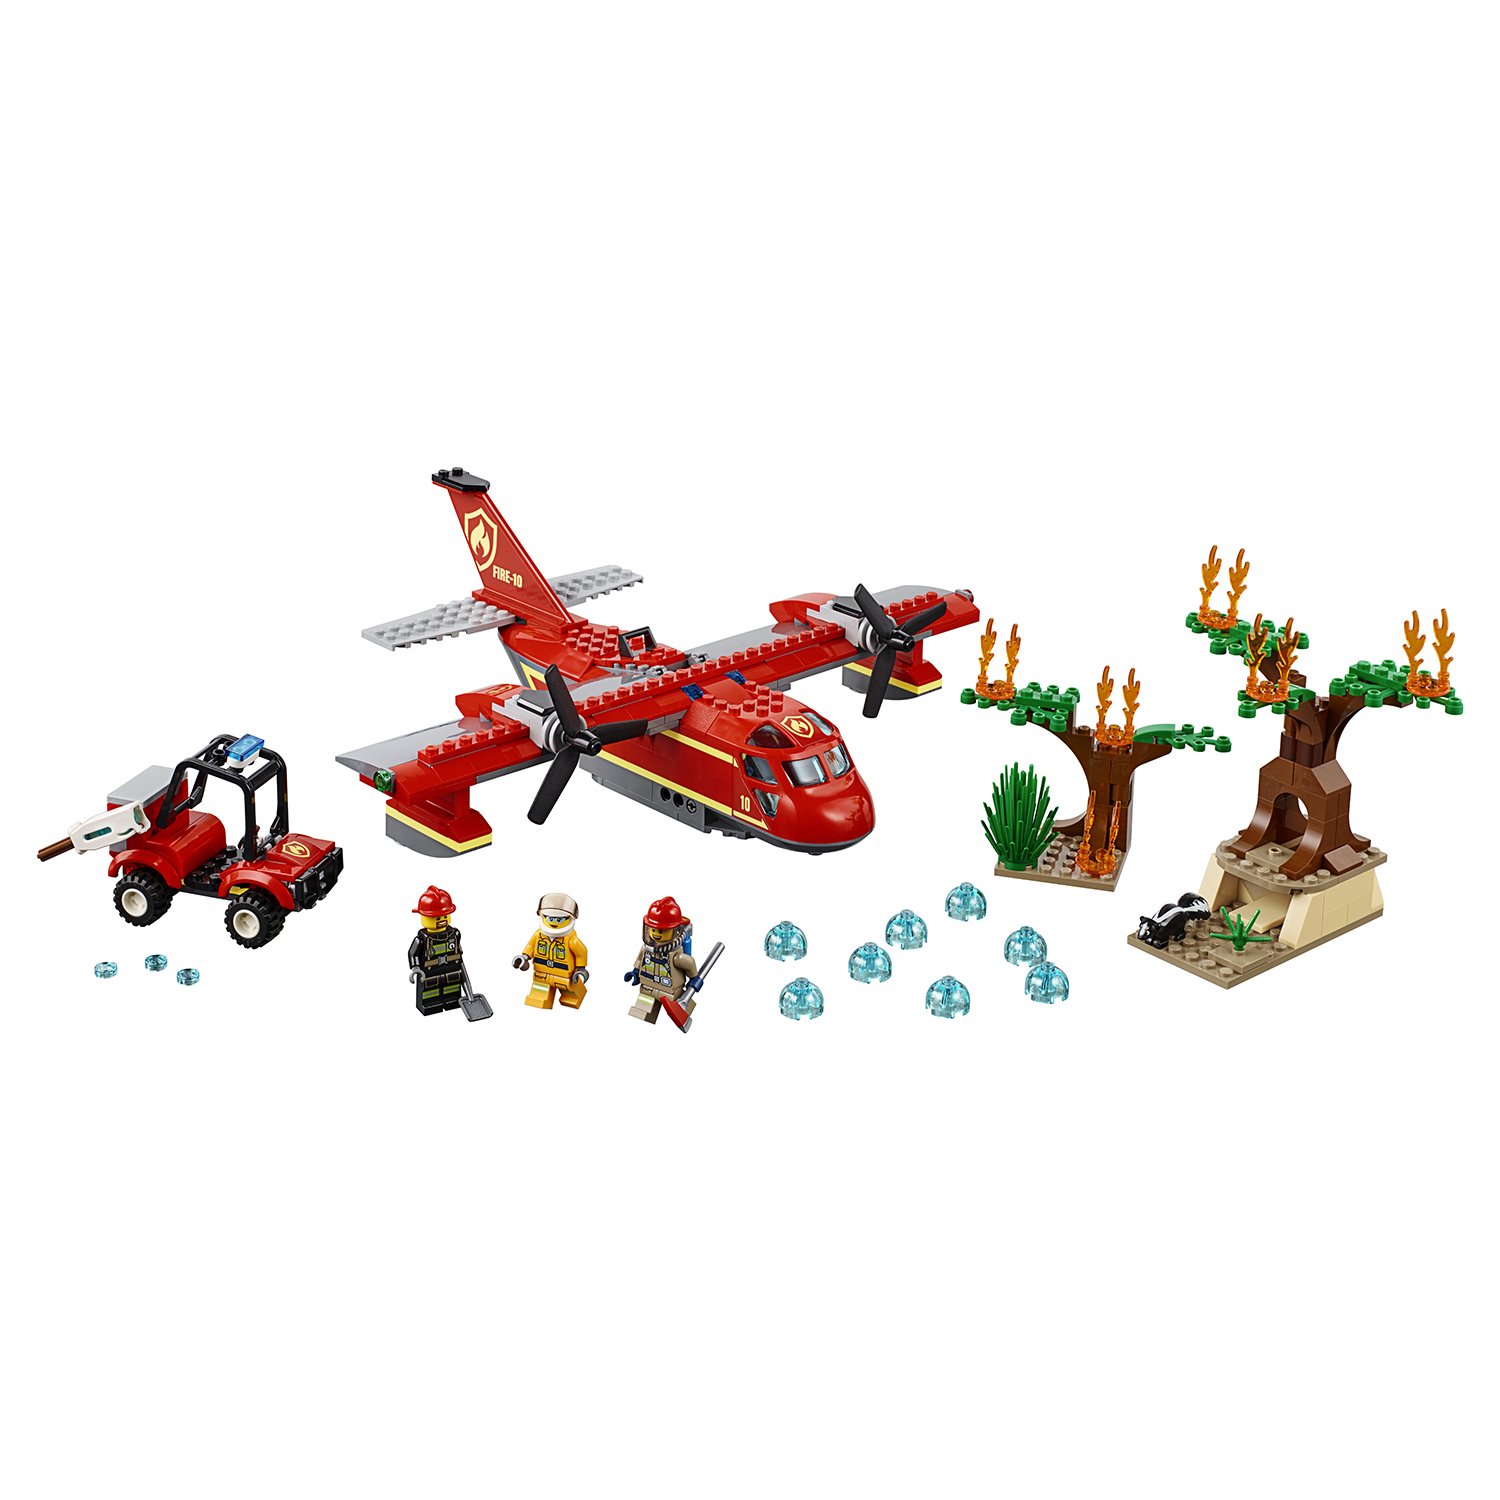 Lego City 60217 Пожарный самолёт